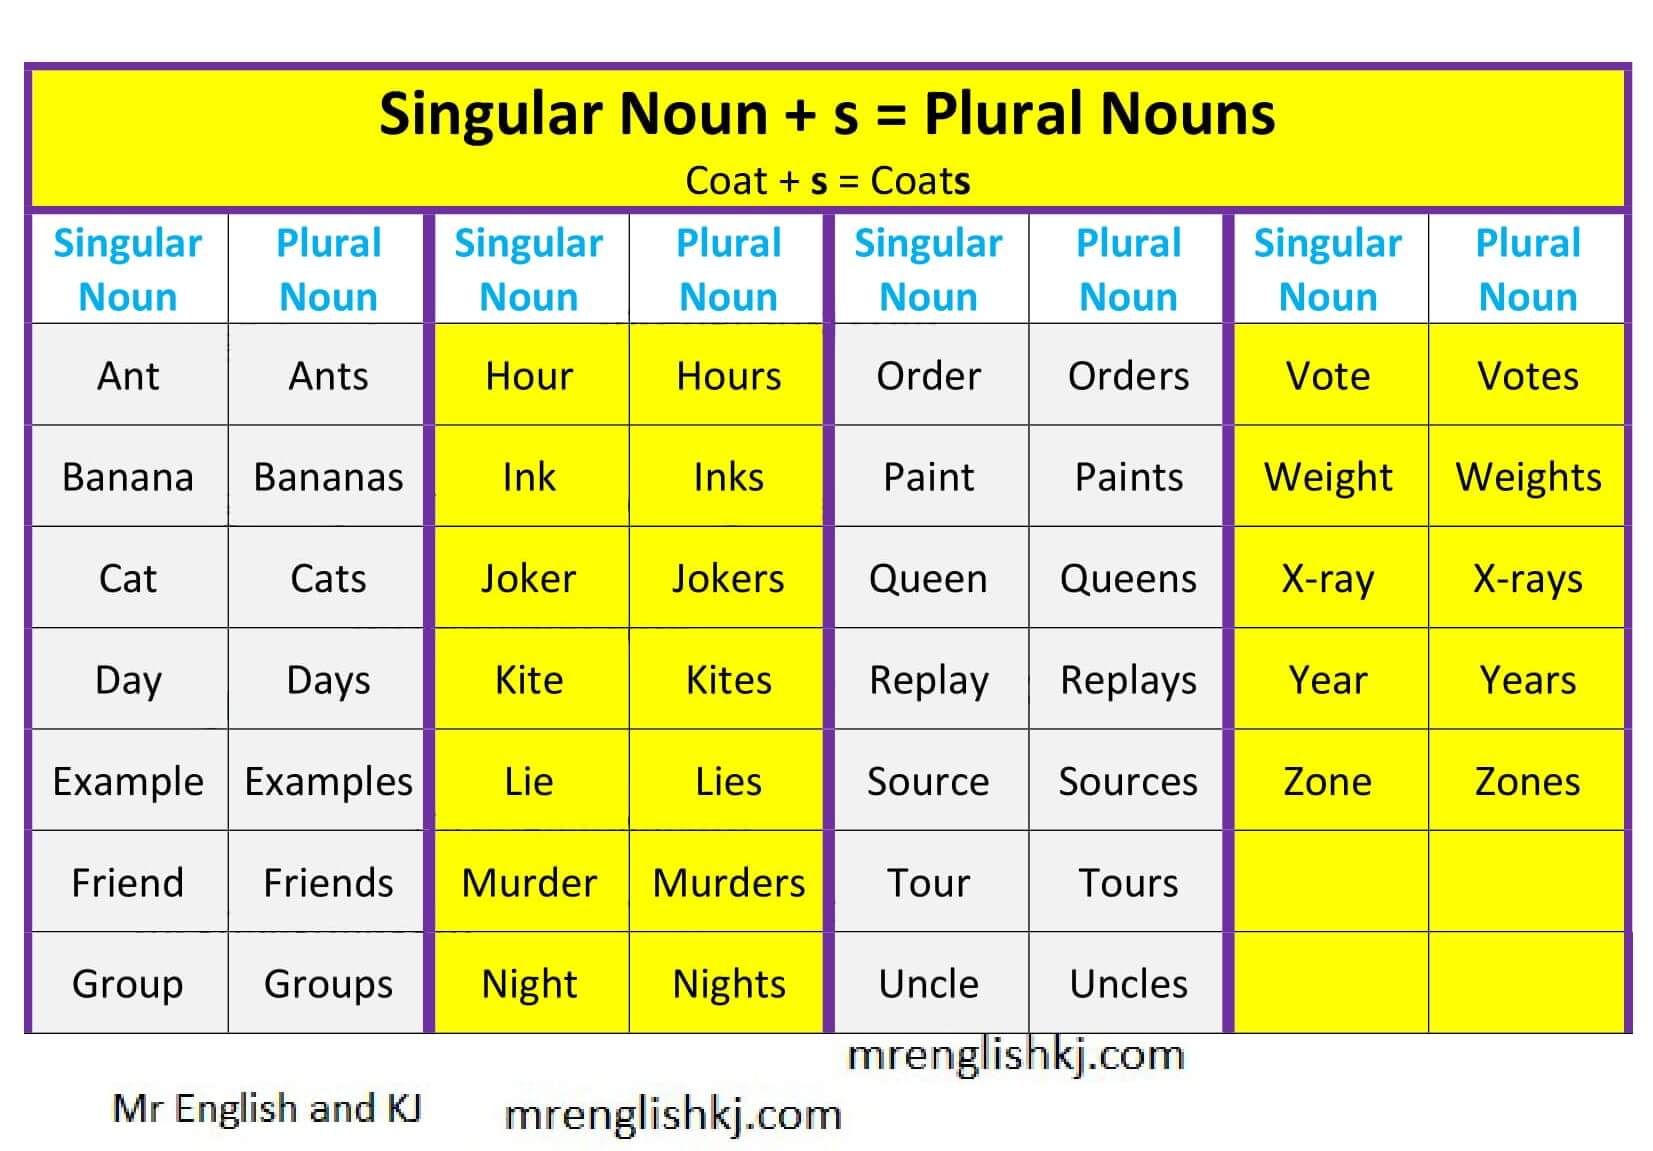 plural-noun-regular-and-irregular-noun-noun-mr-english-and-kj